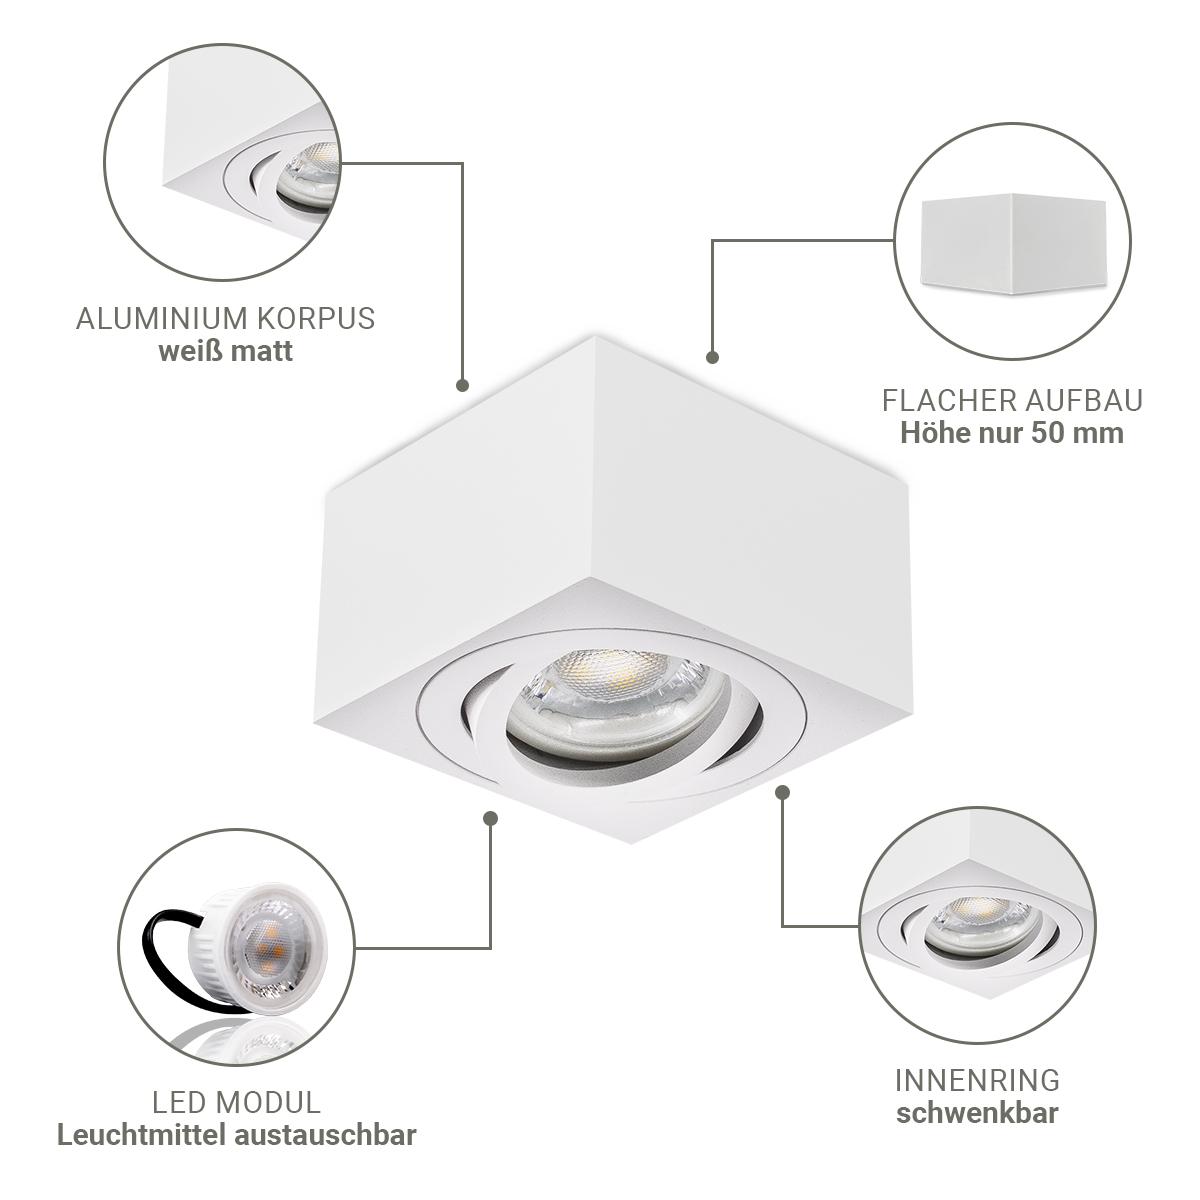 Flacher Aufbaustrahler weiß eckig für LED-Modul schwenkbar Deckenleuchte